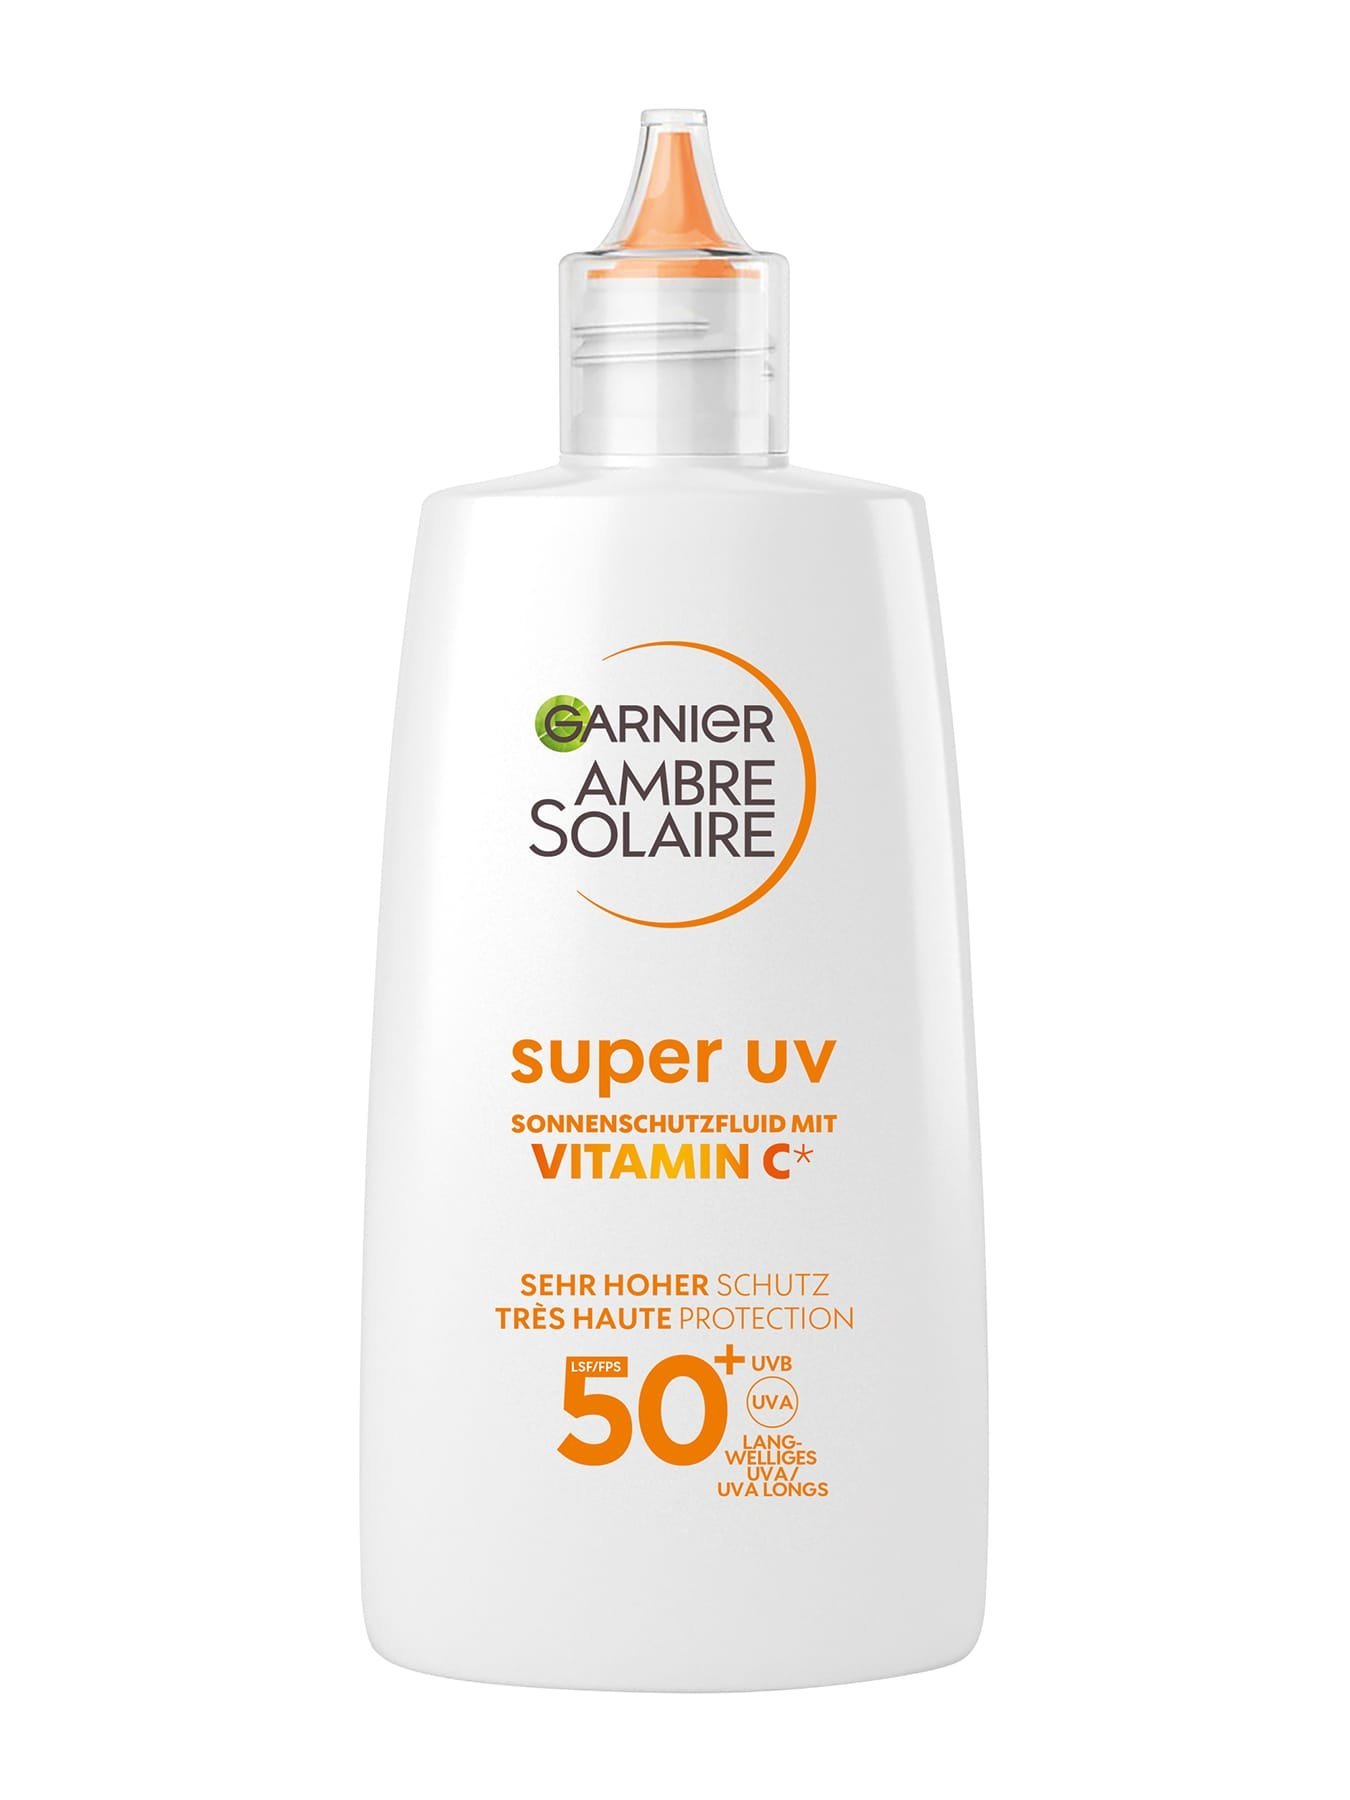 Super UV Sonnenschutzfluid mit Vitamin C LSF 50+ - Produktabbildung Vorderseite